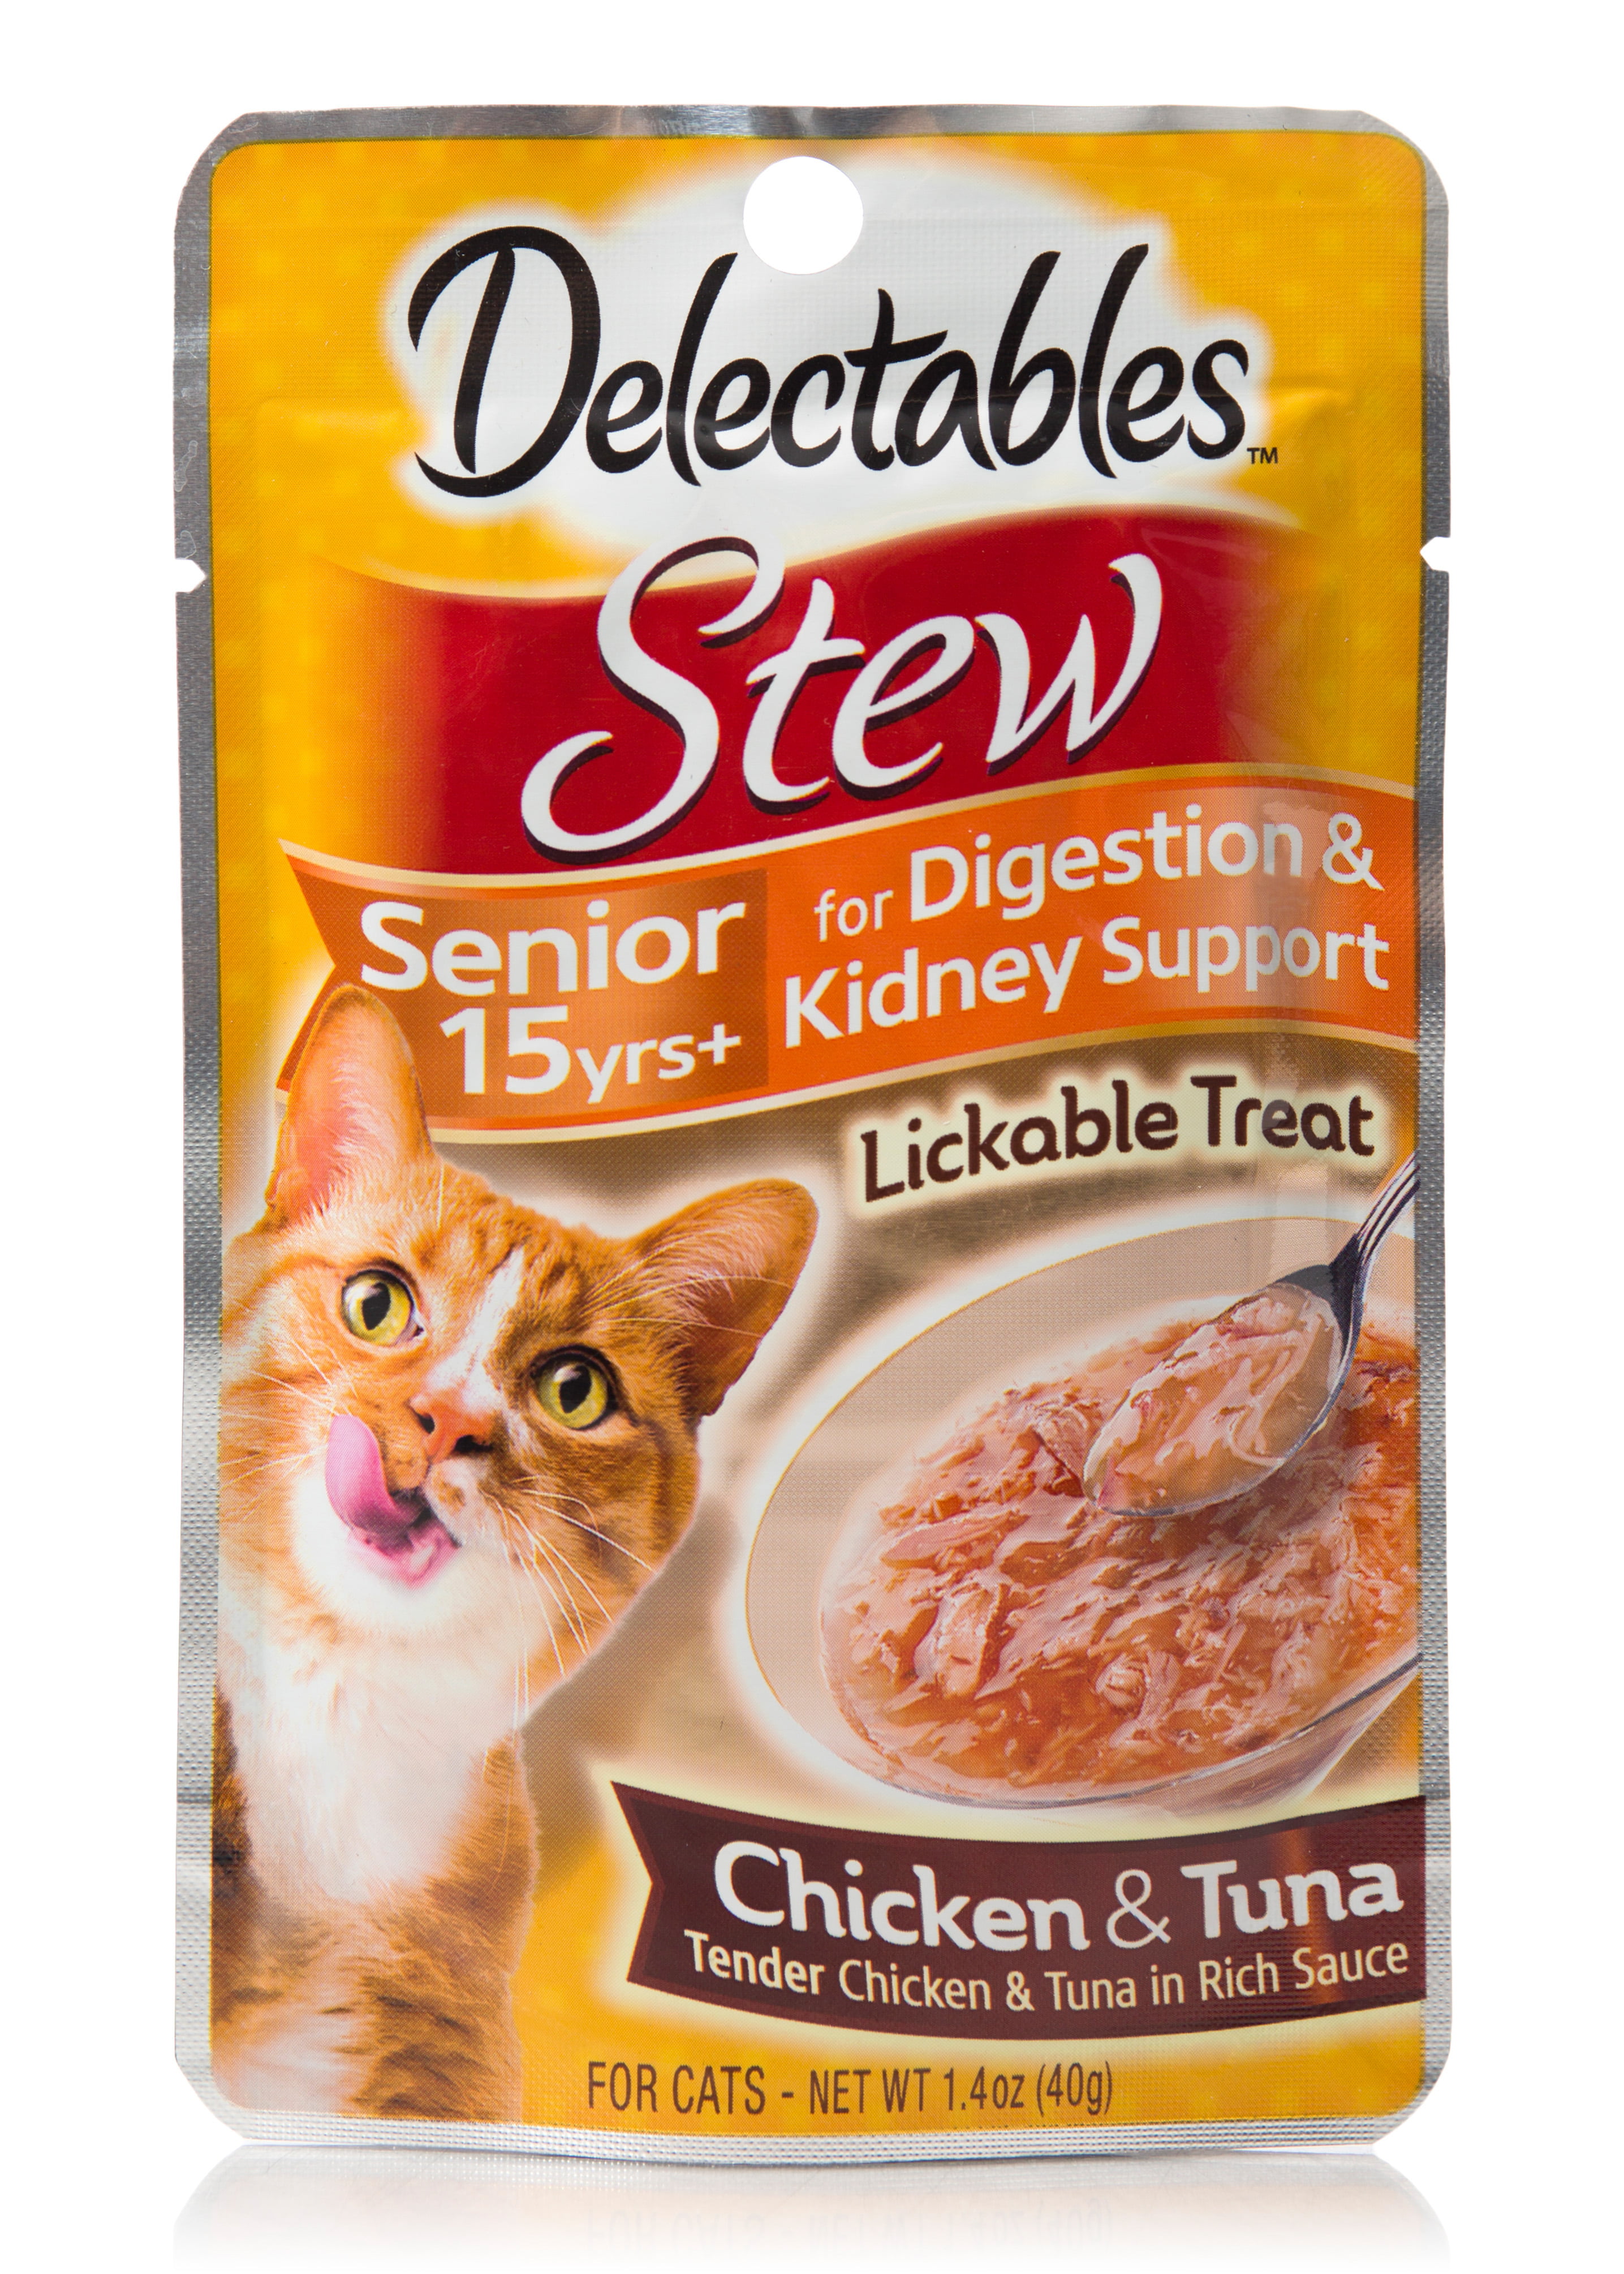 Delectables Lickable Treat Stew Senior 15 yrs+ Chicken & Tuna, 1.4oz